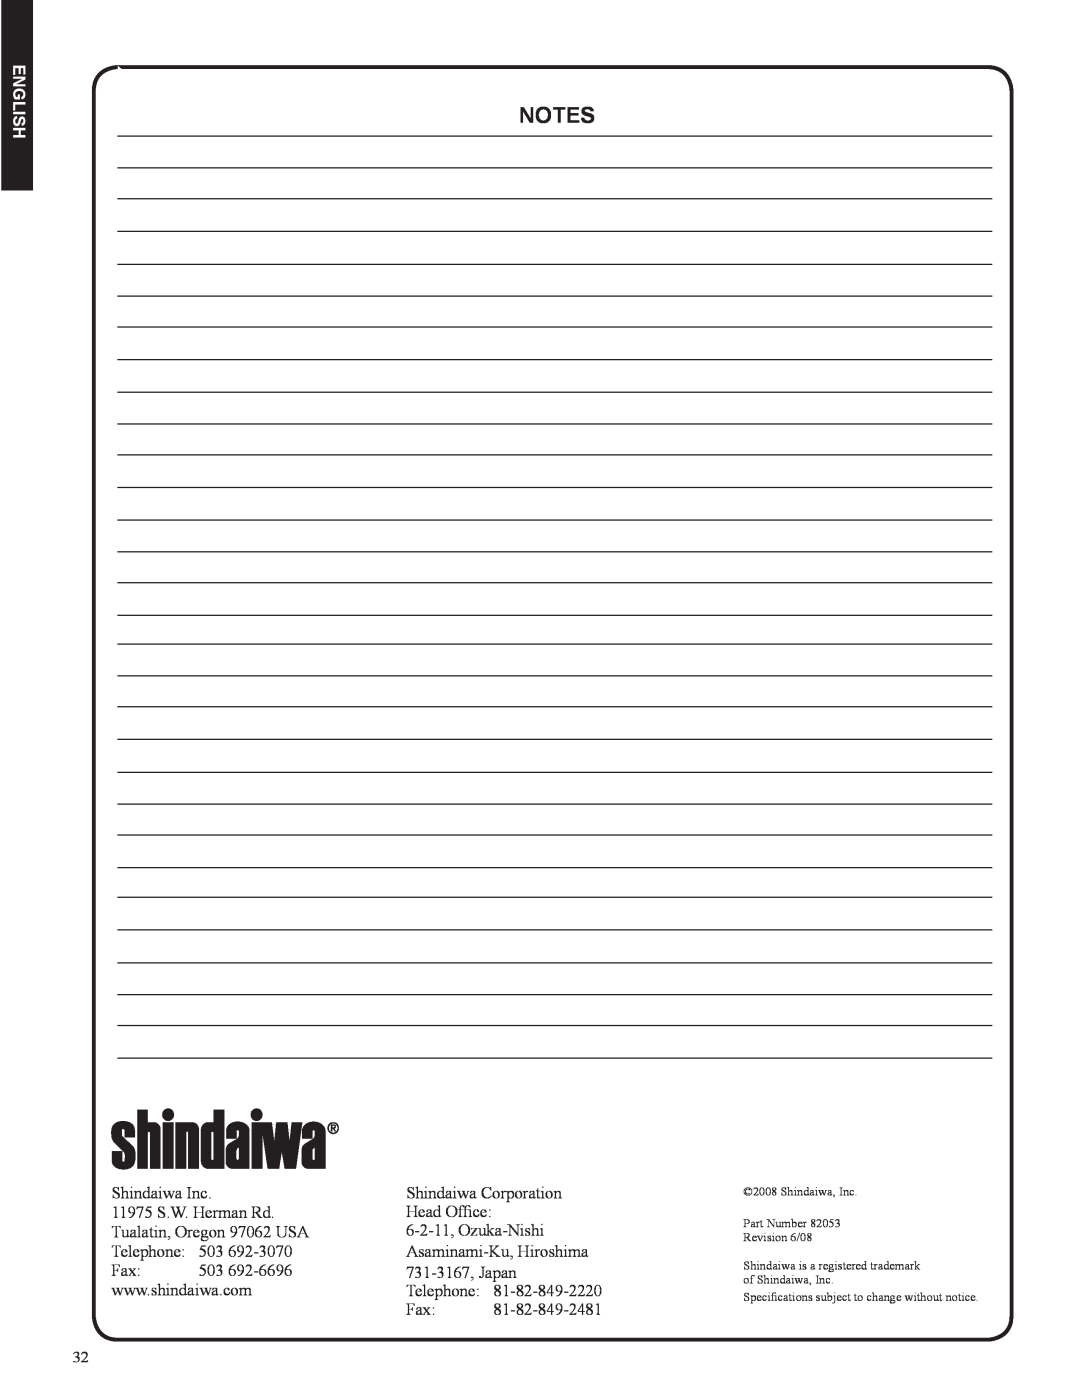 Shindaiwa DH212, 82053 manual notes, English, Shindaiwa Inc 